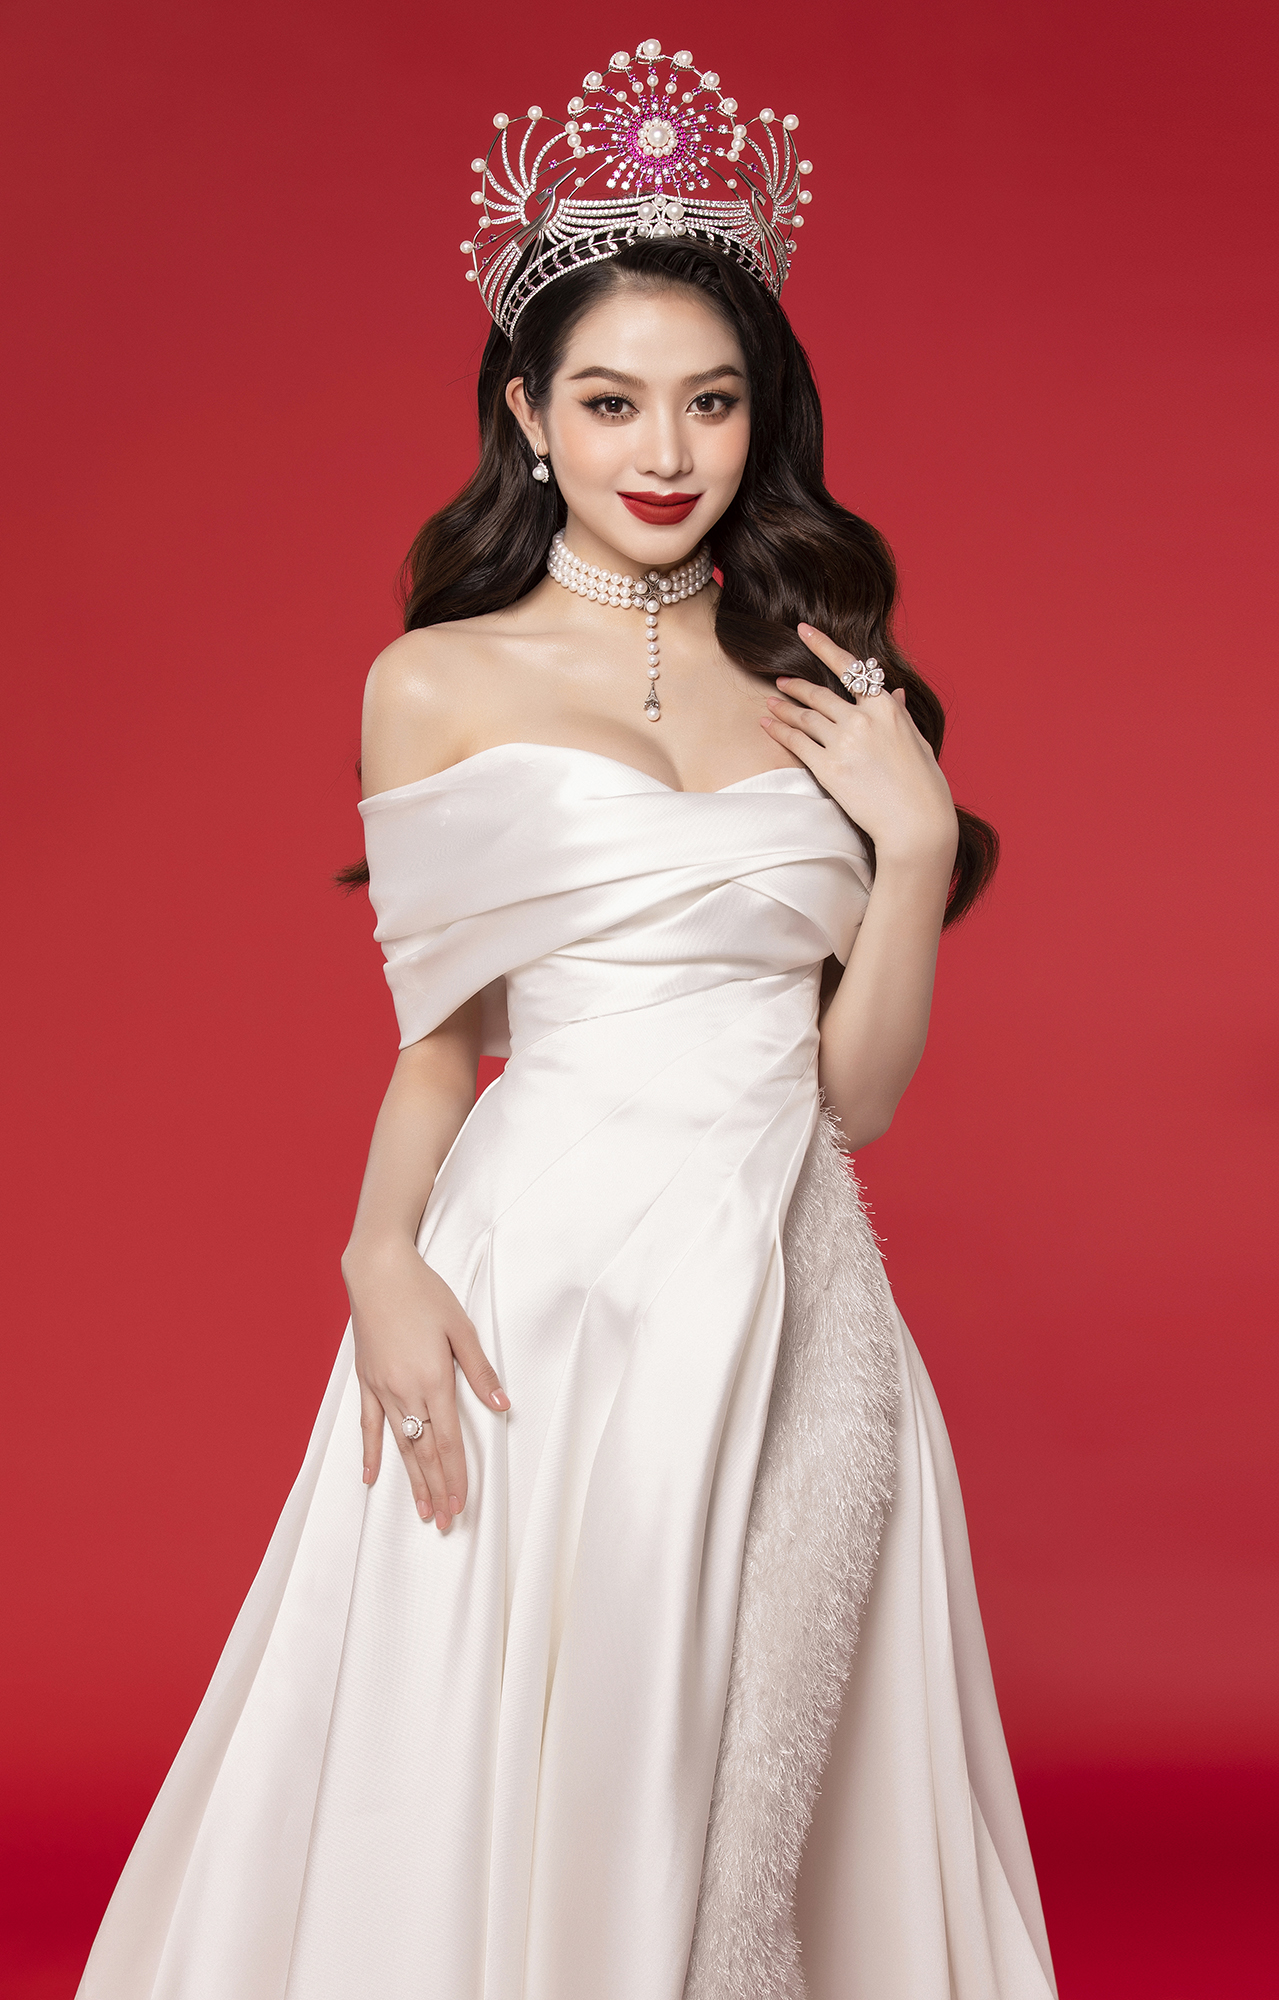 Hoa hậu Thanh Thủy: Yếu tố "chốt giải" của một cuộc thi nhan sắc là sự dung hoà - Ảnh 1.